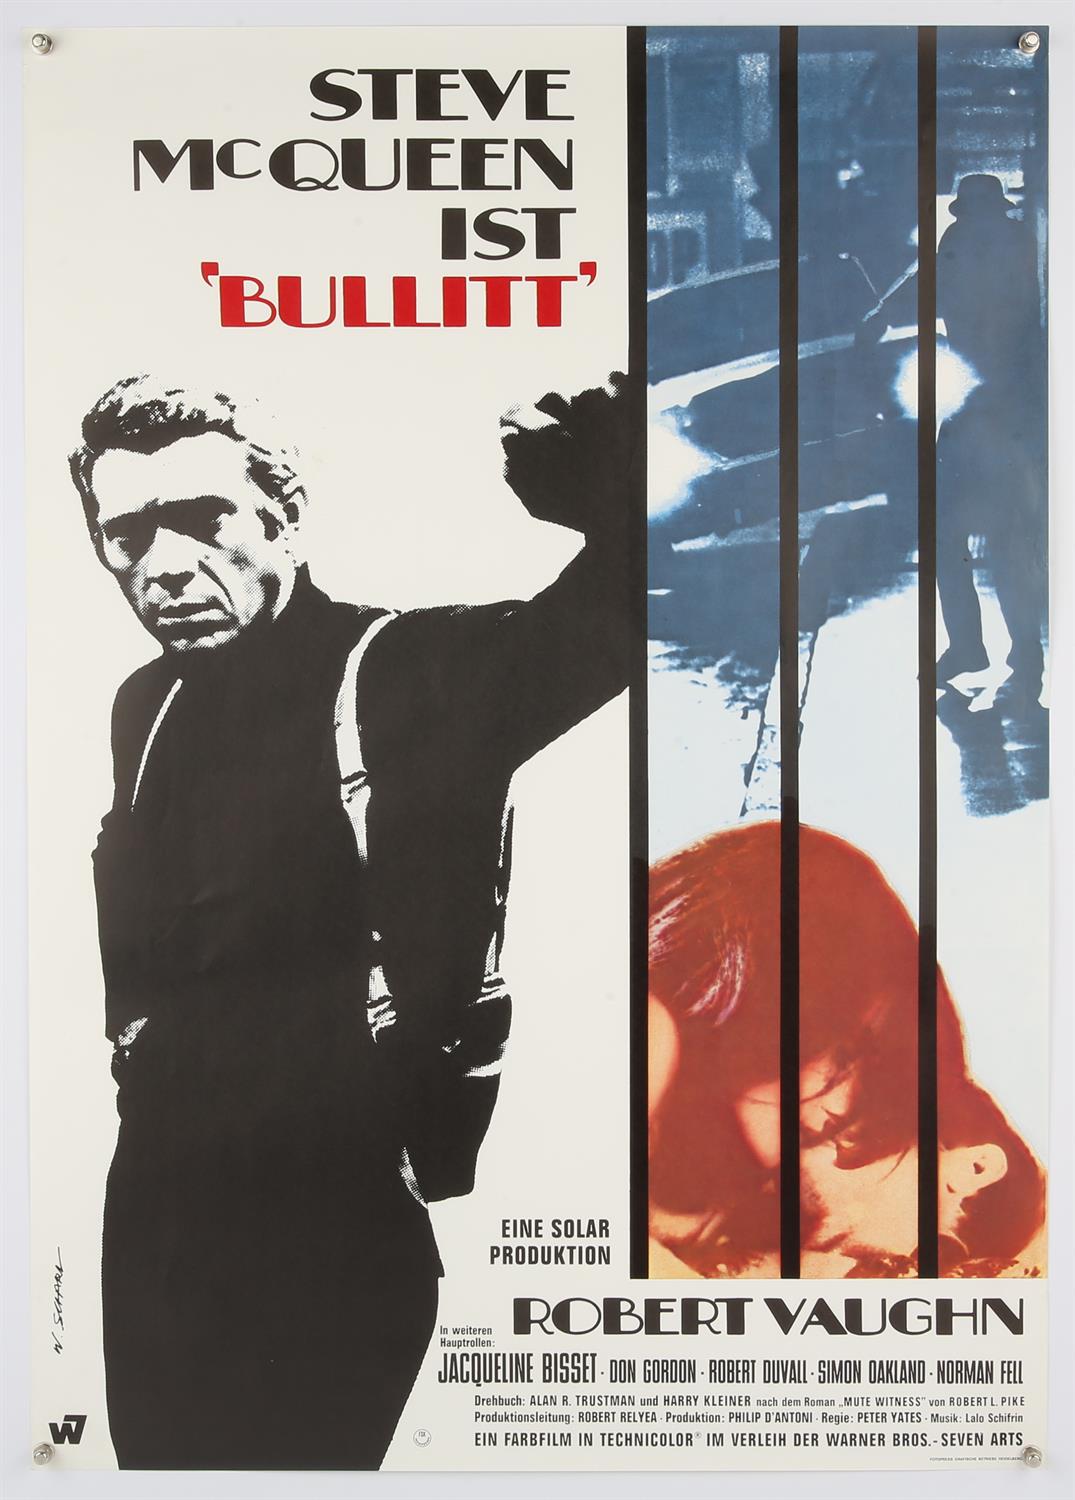 Bullitt (1968) German film poster, starring Steve McQueen, rolled, 23 x 33 inches.